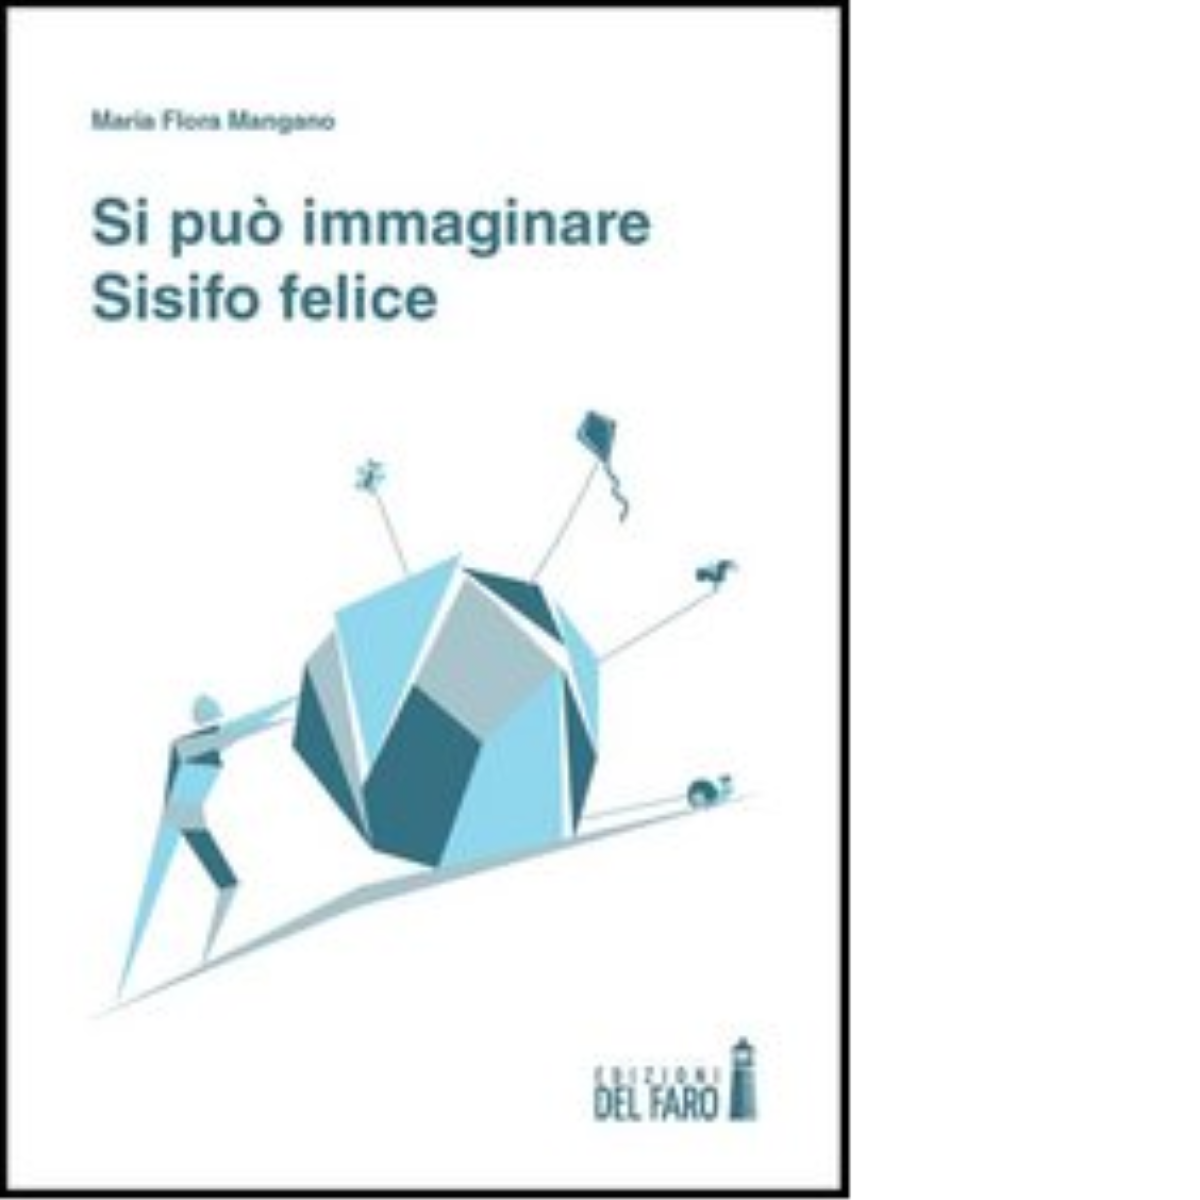 SI PU? IMMAGINARE SISIFO FELICE di Mangano M. Flora - Edizioni Del faro, 2013 libro usato